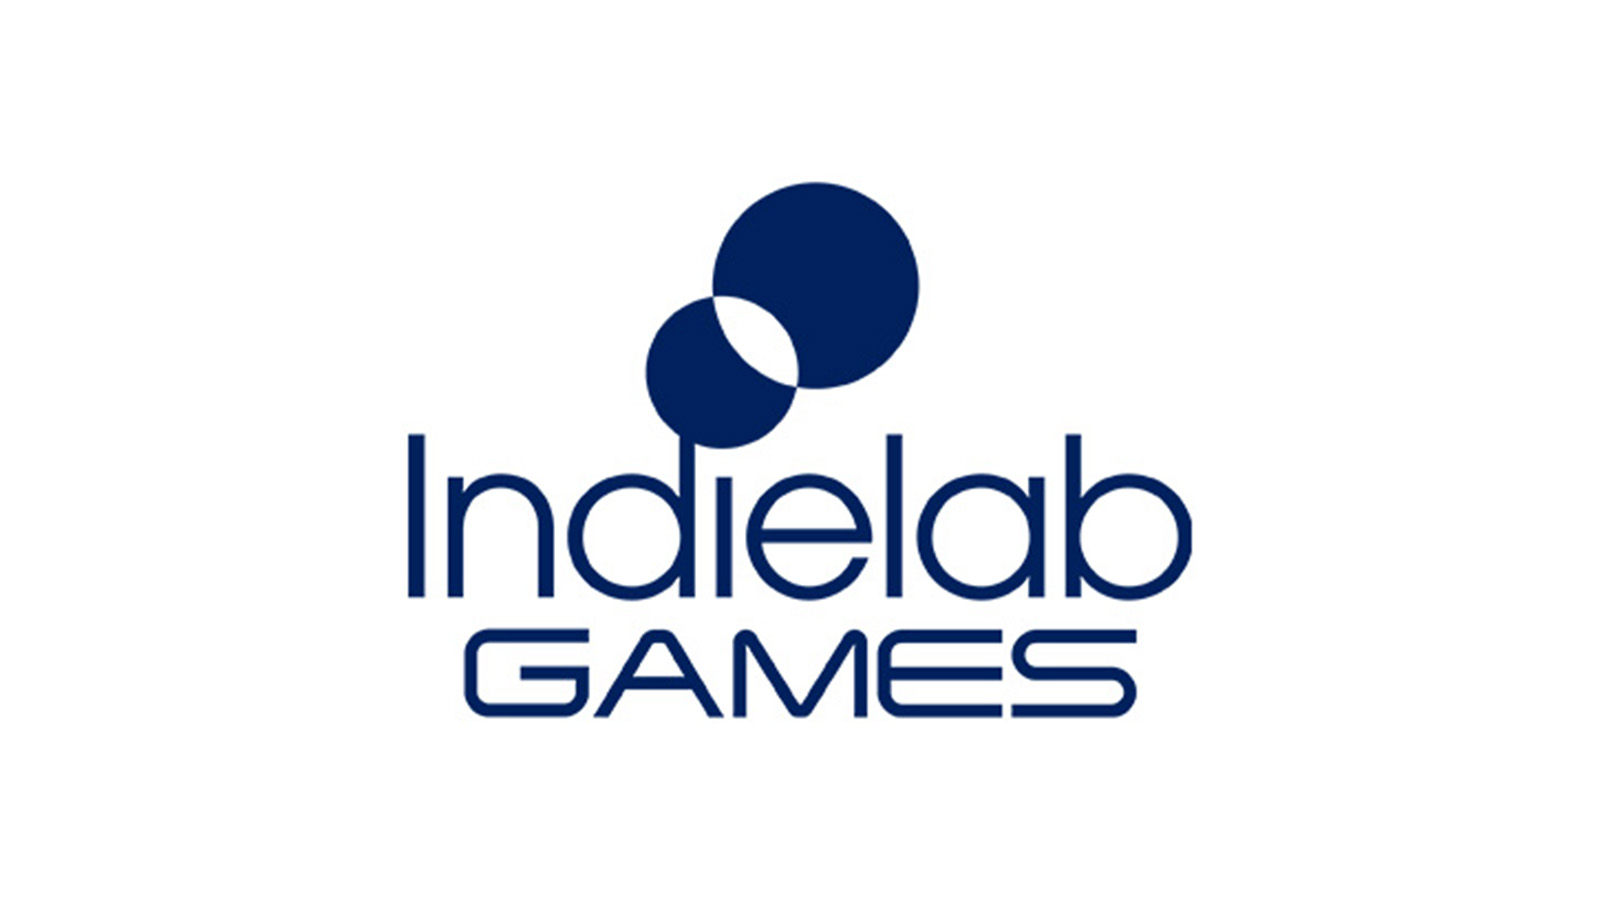 Indielab Games logo